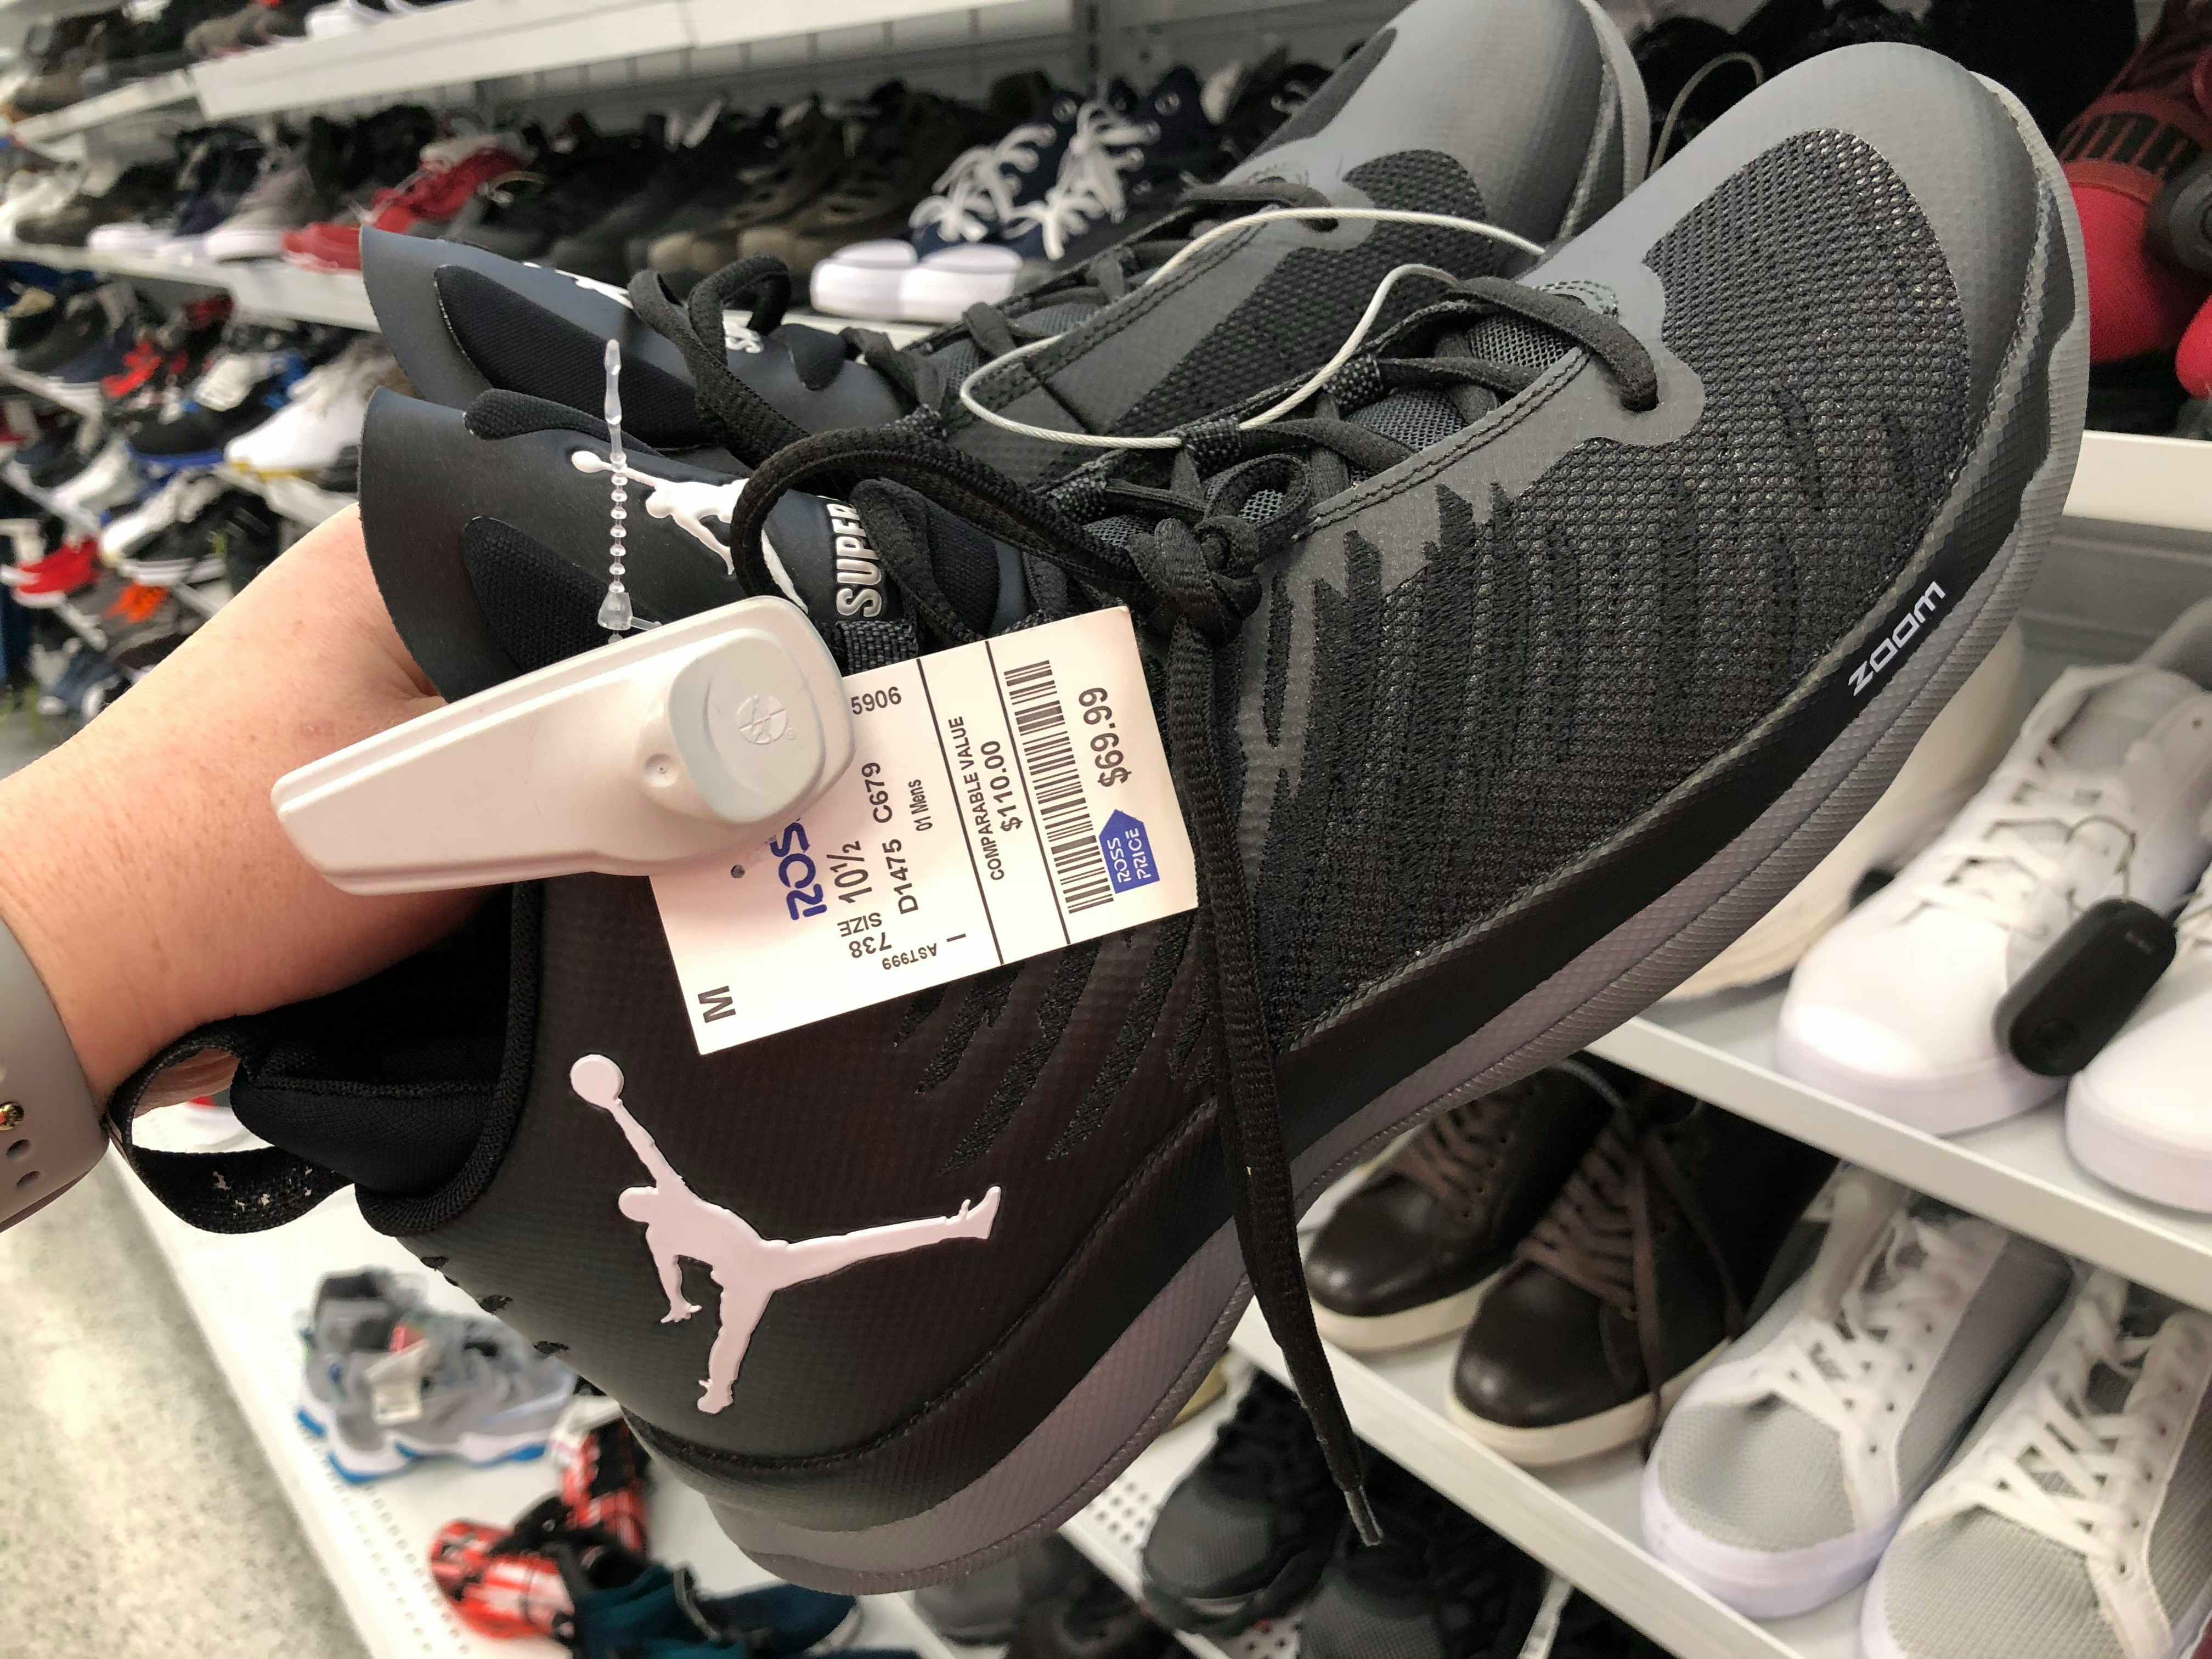 Nike Air Jordans for $69.99 at Ross. Retail price starts at $110.